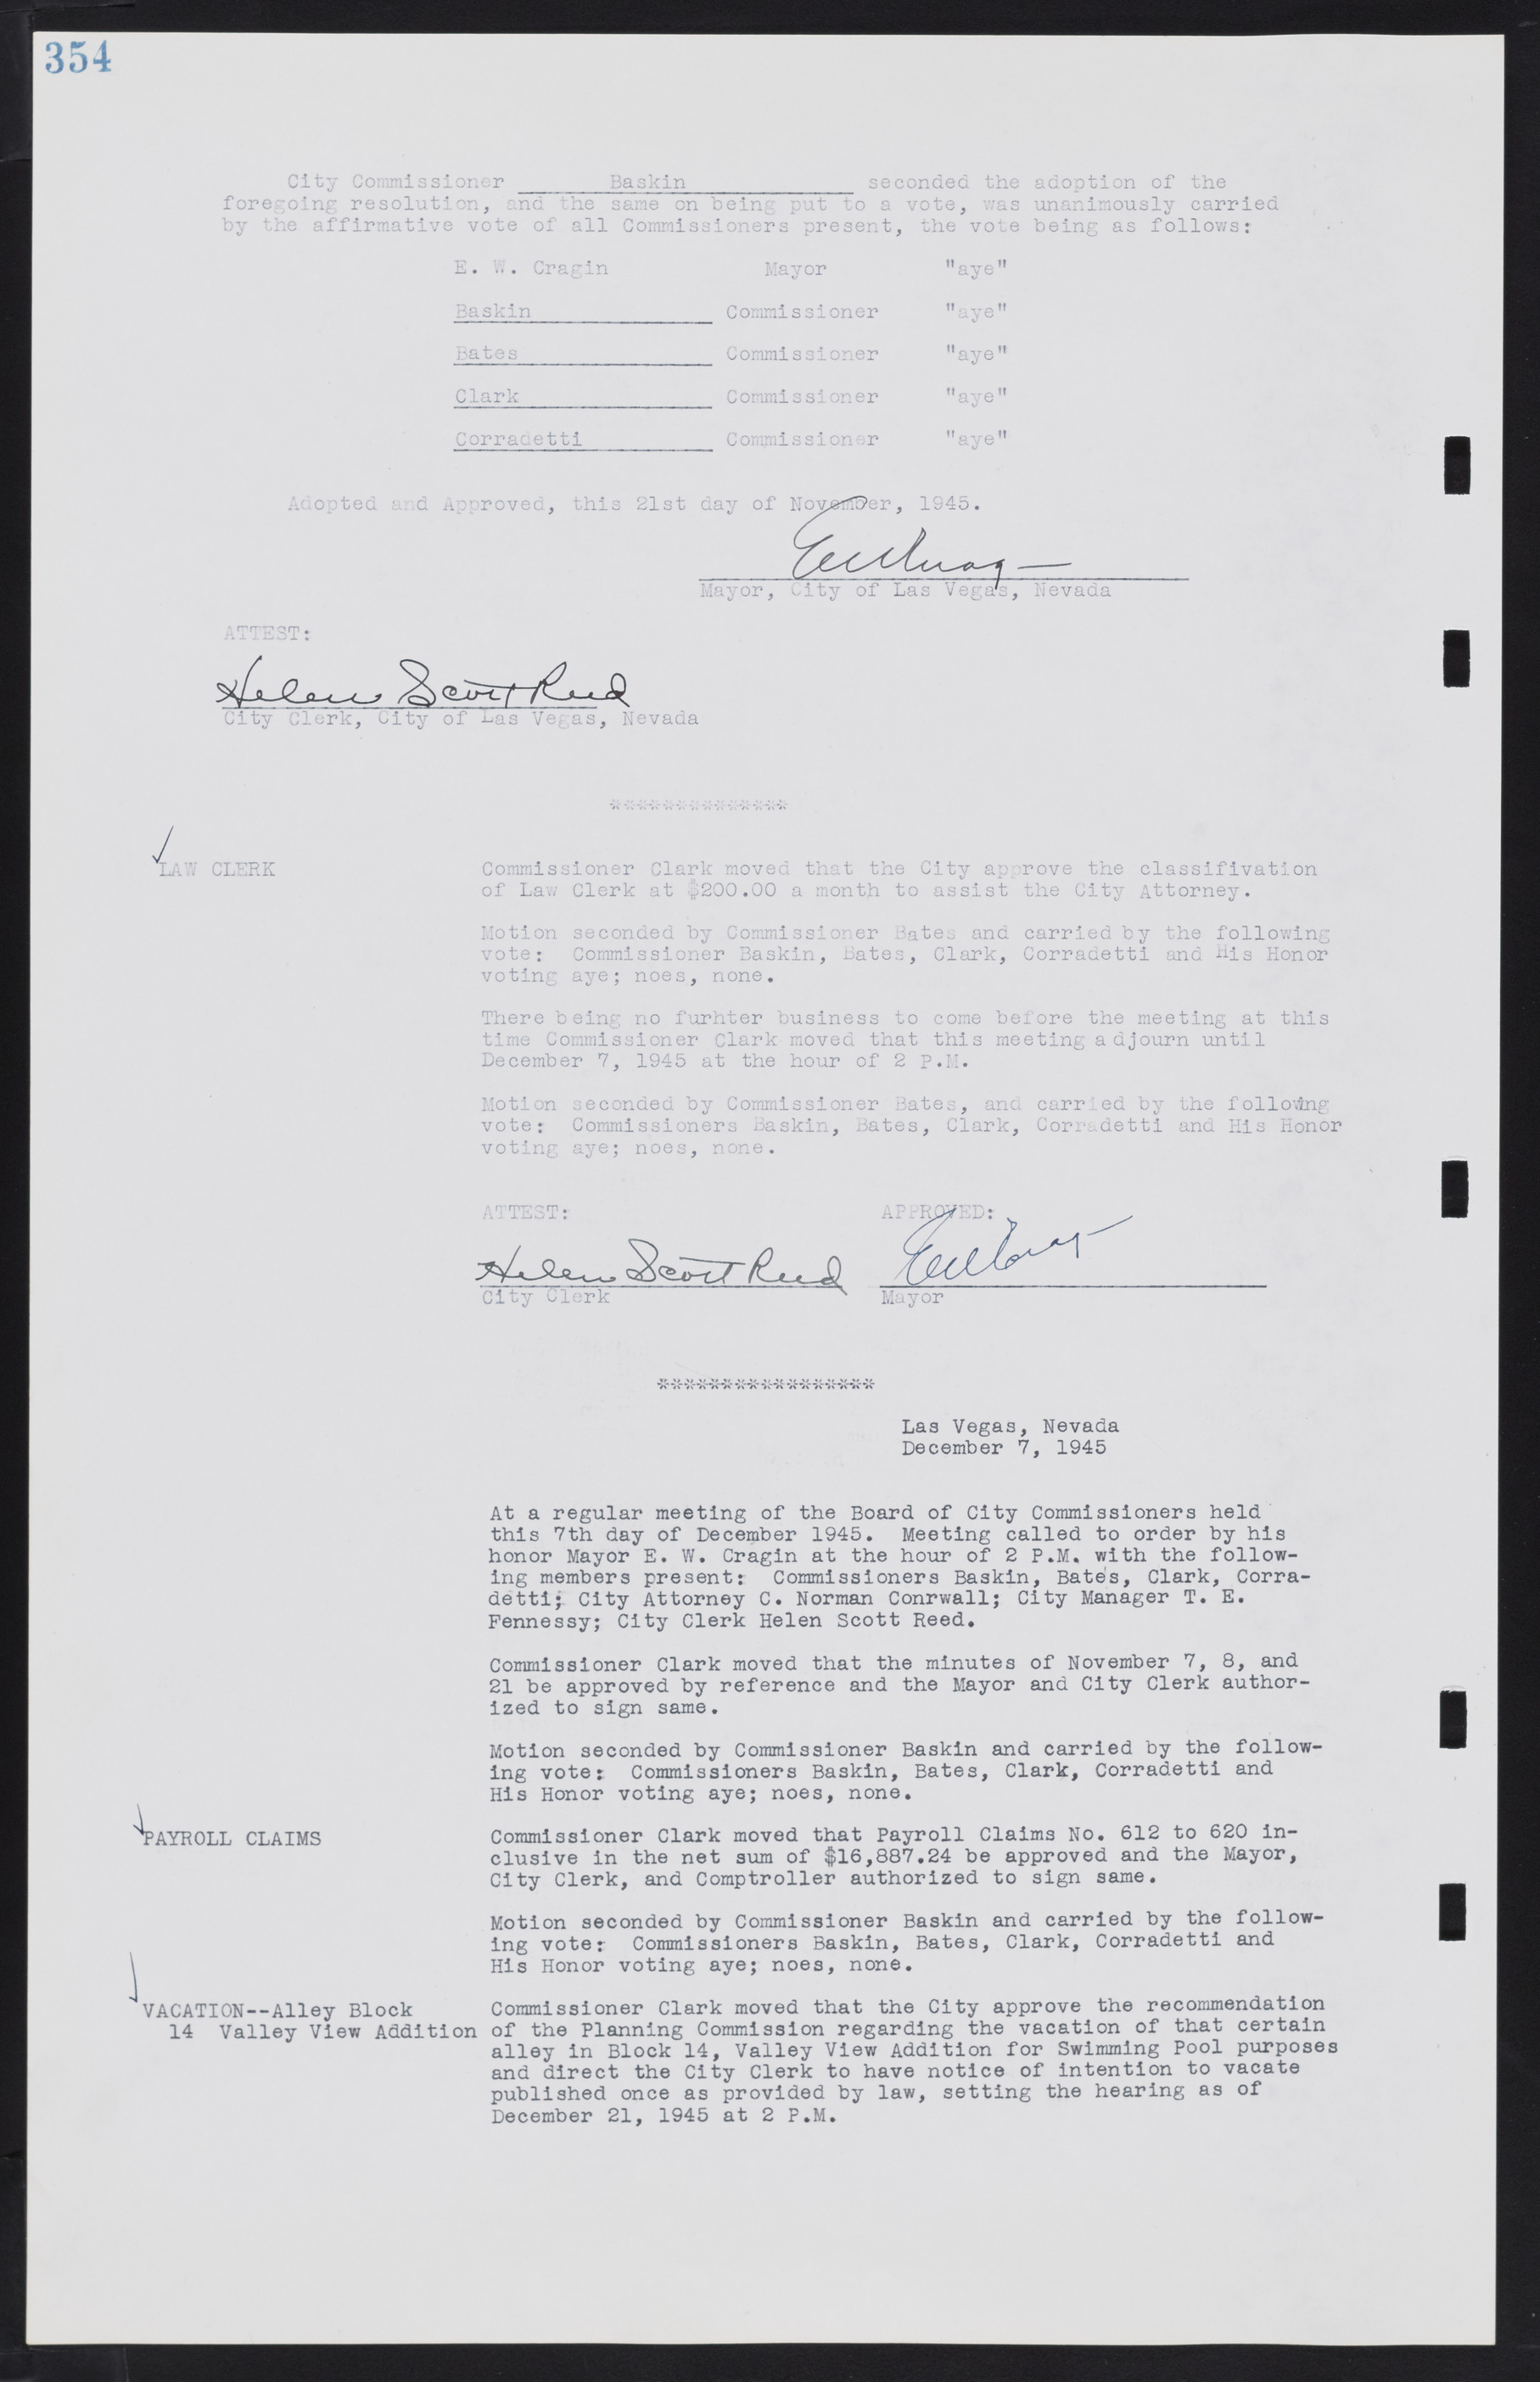 Las Vegas City Commission Minutes, August 11, 1942 to December 30, 1946, lvc000005-379